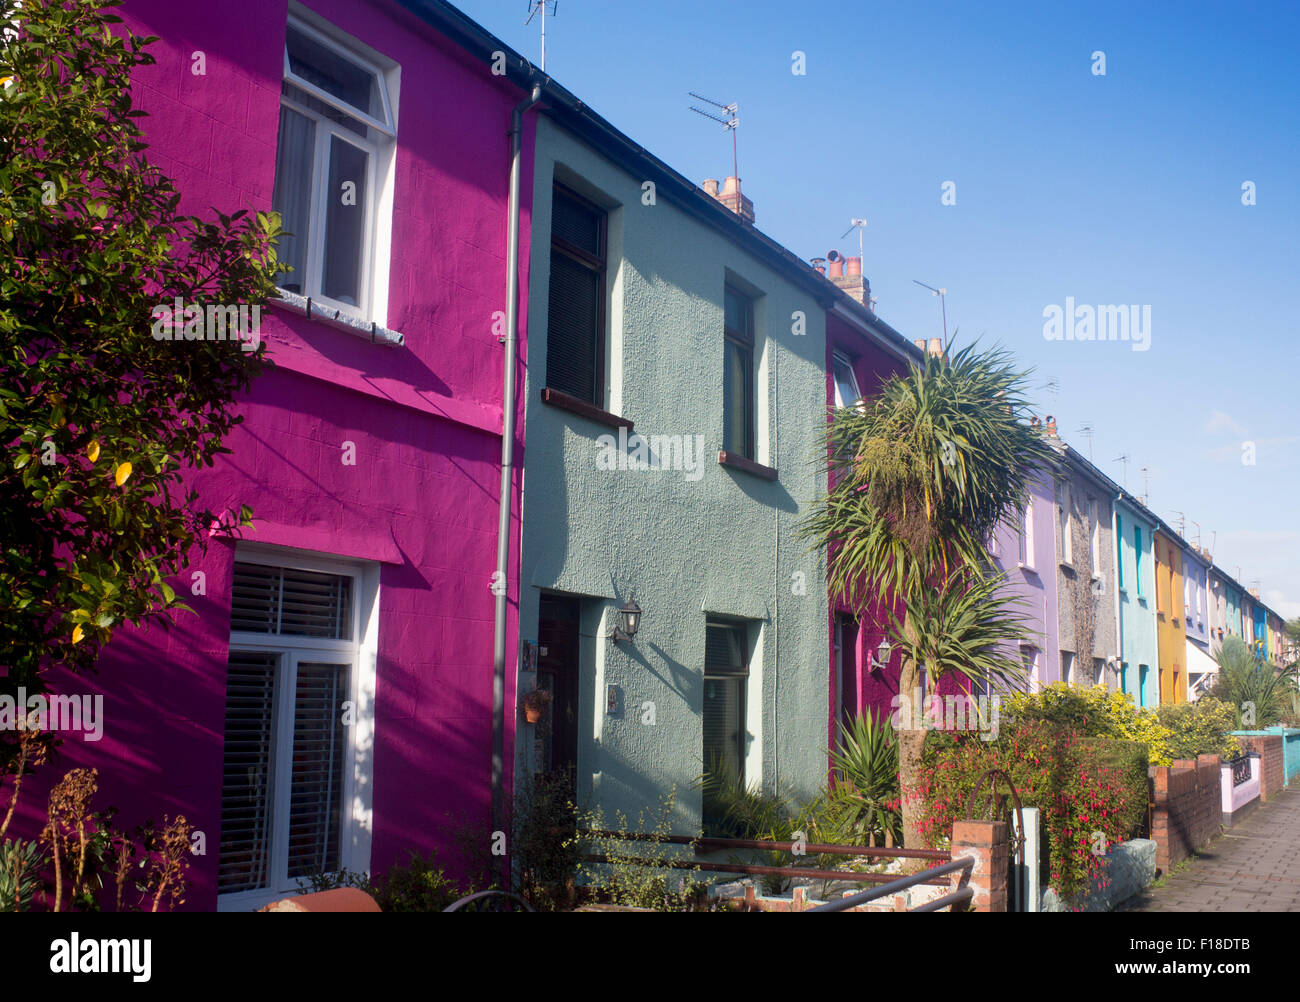 Peint en couleur Terrasse Terrasse maisons cottages Roath Cardiff Wales UK Banque D'Images